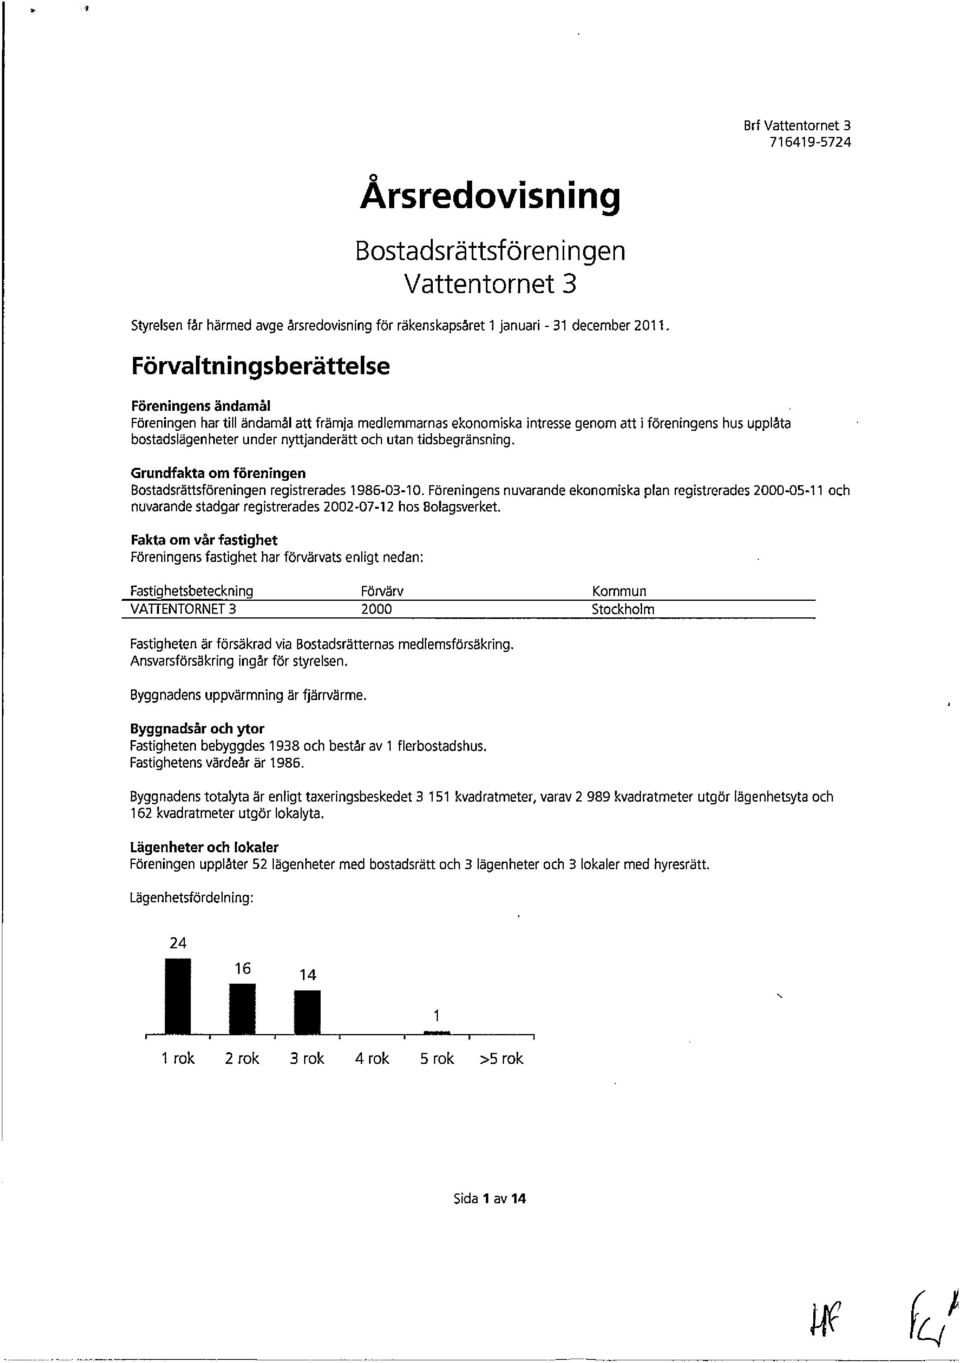 tidsbegränsning. Grundfakta om föreningen Bostadsrättsföreningen registrerades 1986-03-10.